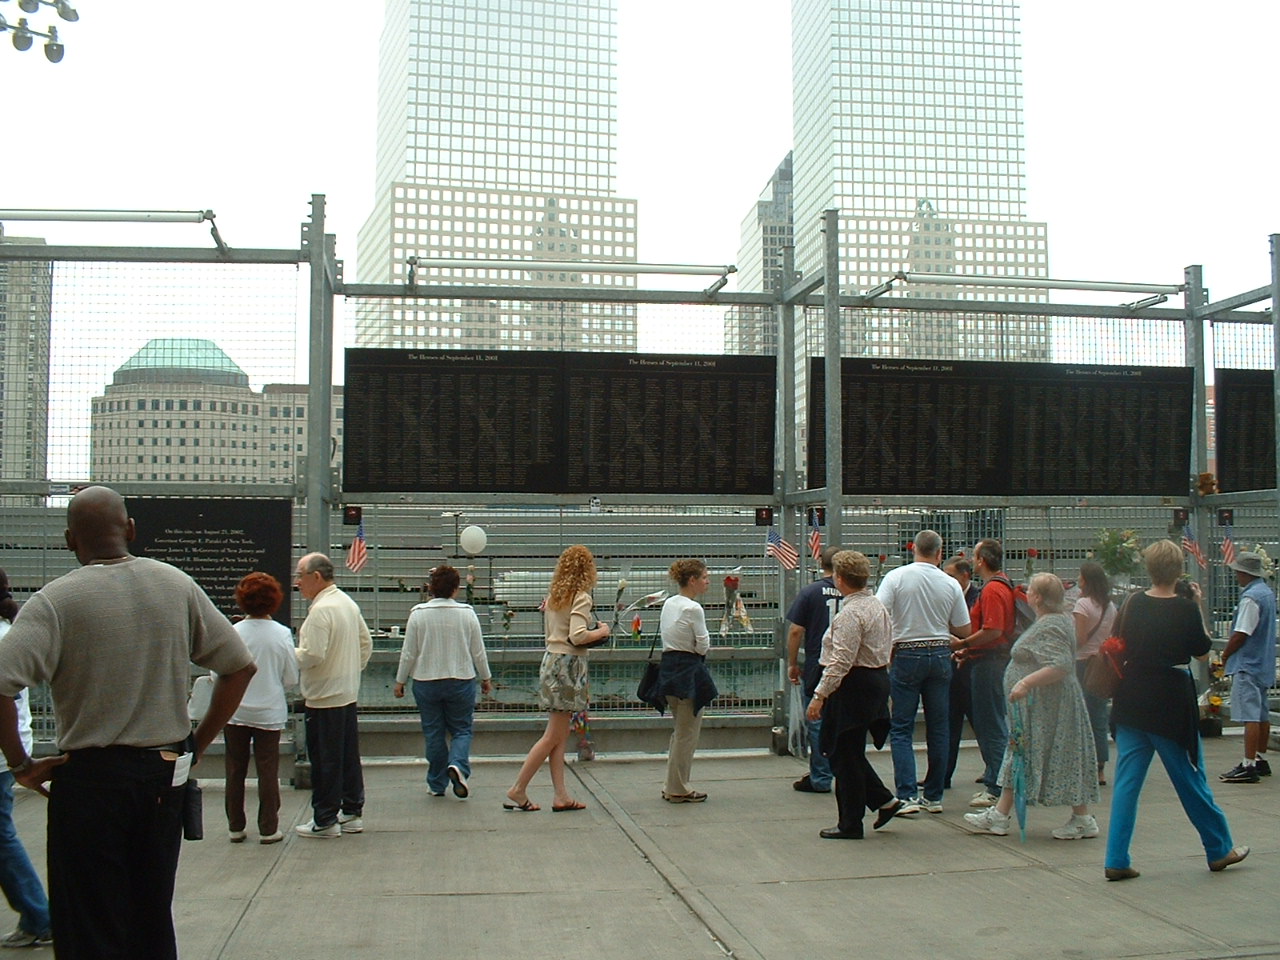 Ground Zero